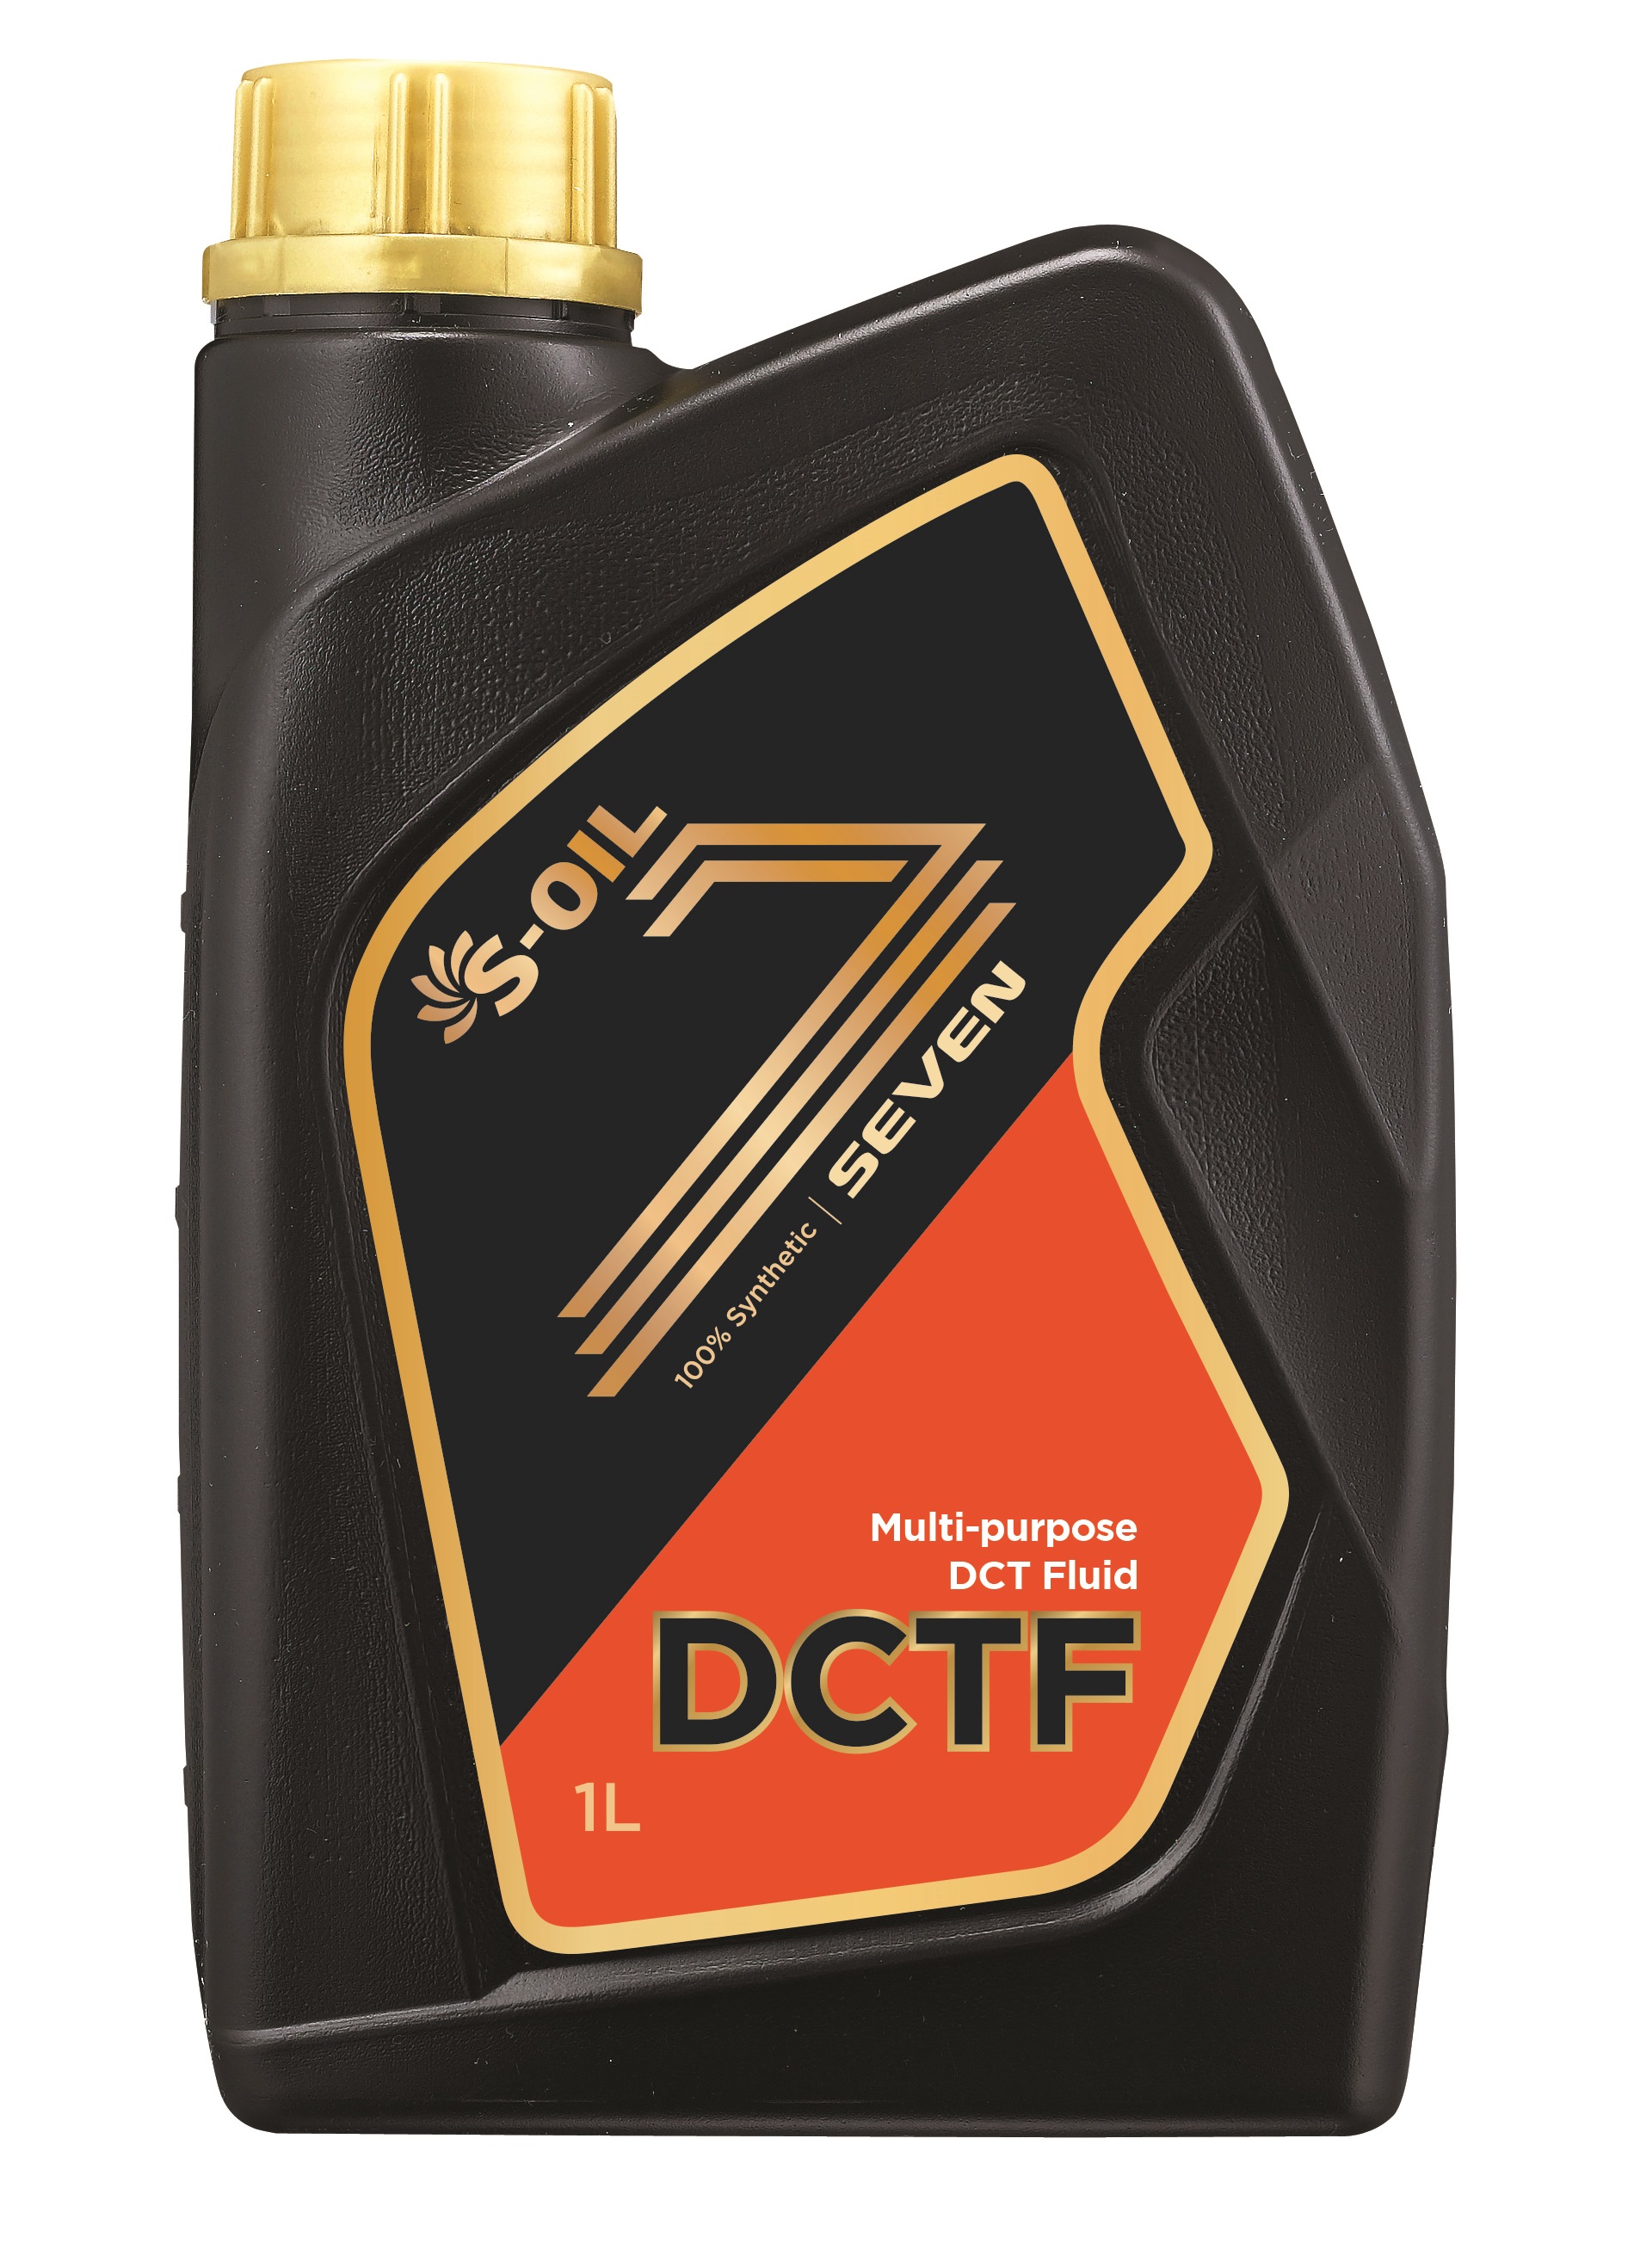 S-OIL SEVEN DCTF 1 литр